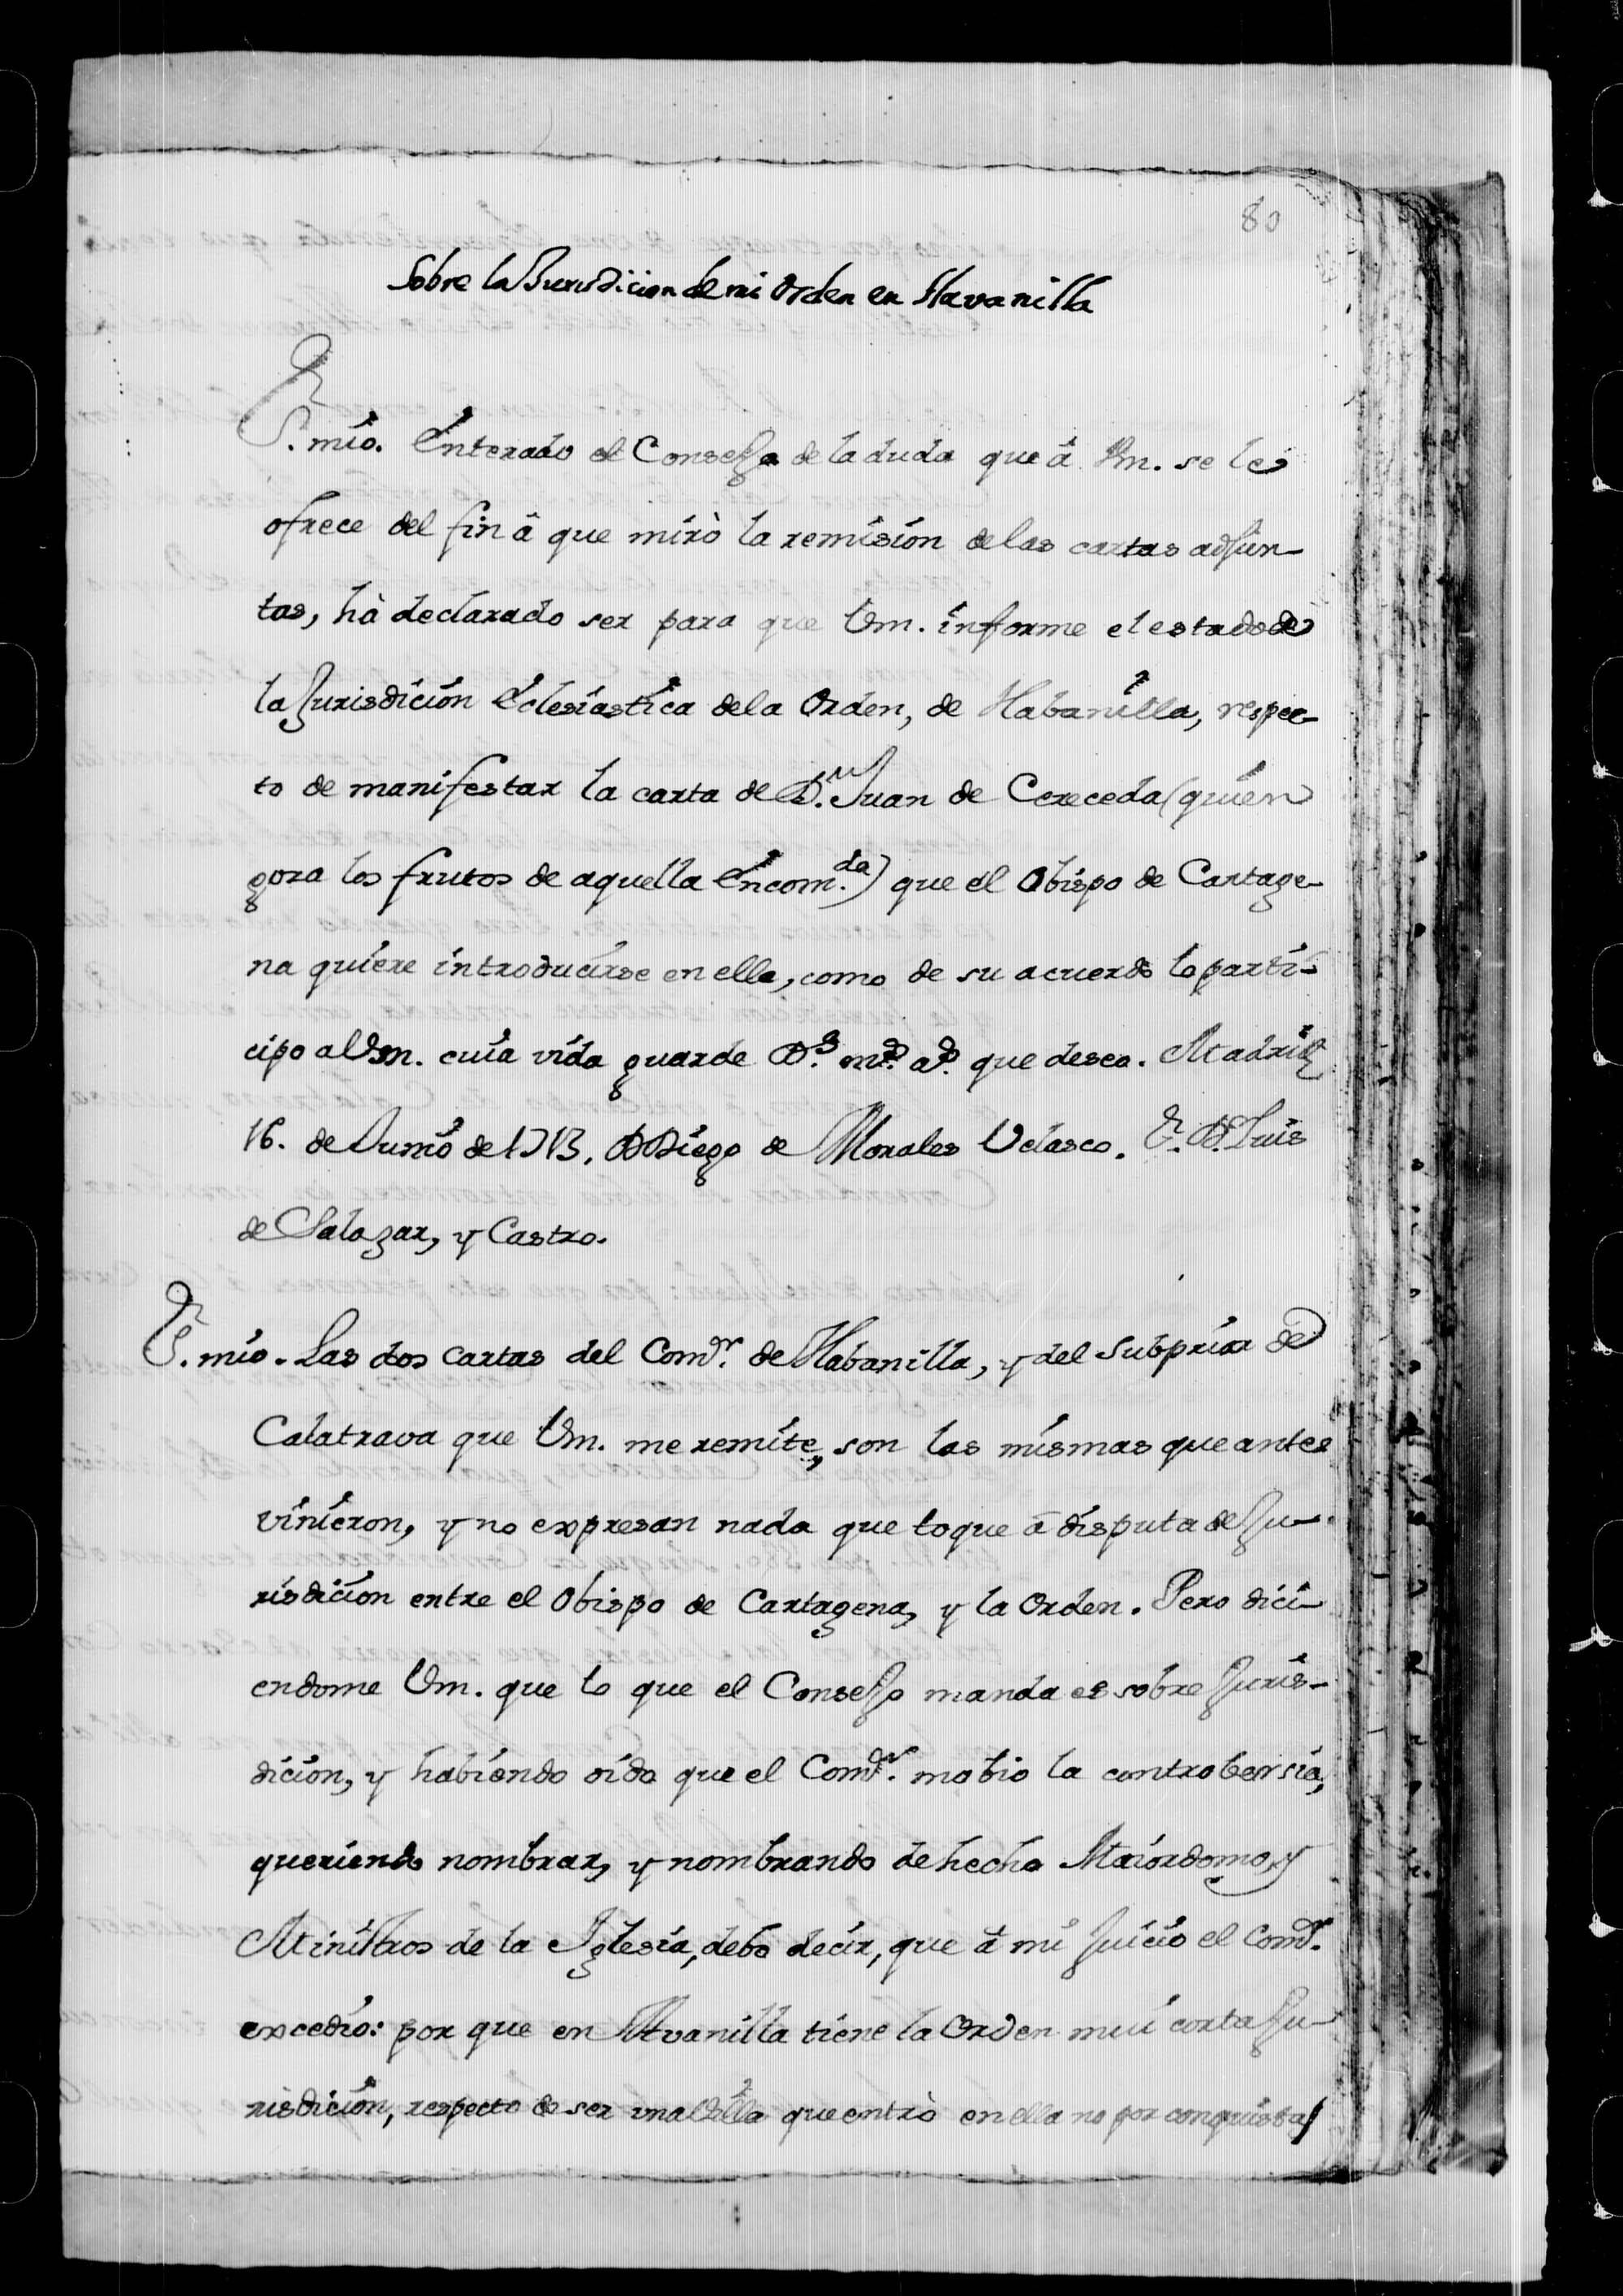 Carta de Diego de Morales y Velasco a Luis de Salazar, rogándole imforme sobre la jurisdicción eclesiástica de la Orden de Calatrava en la villa de Abanilla.